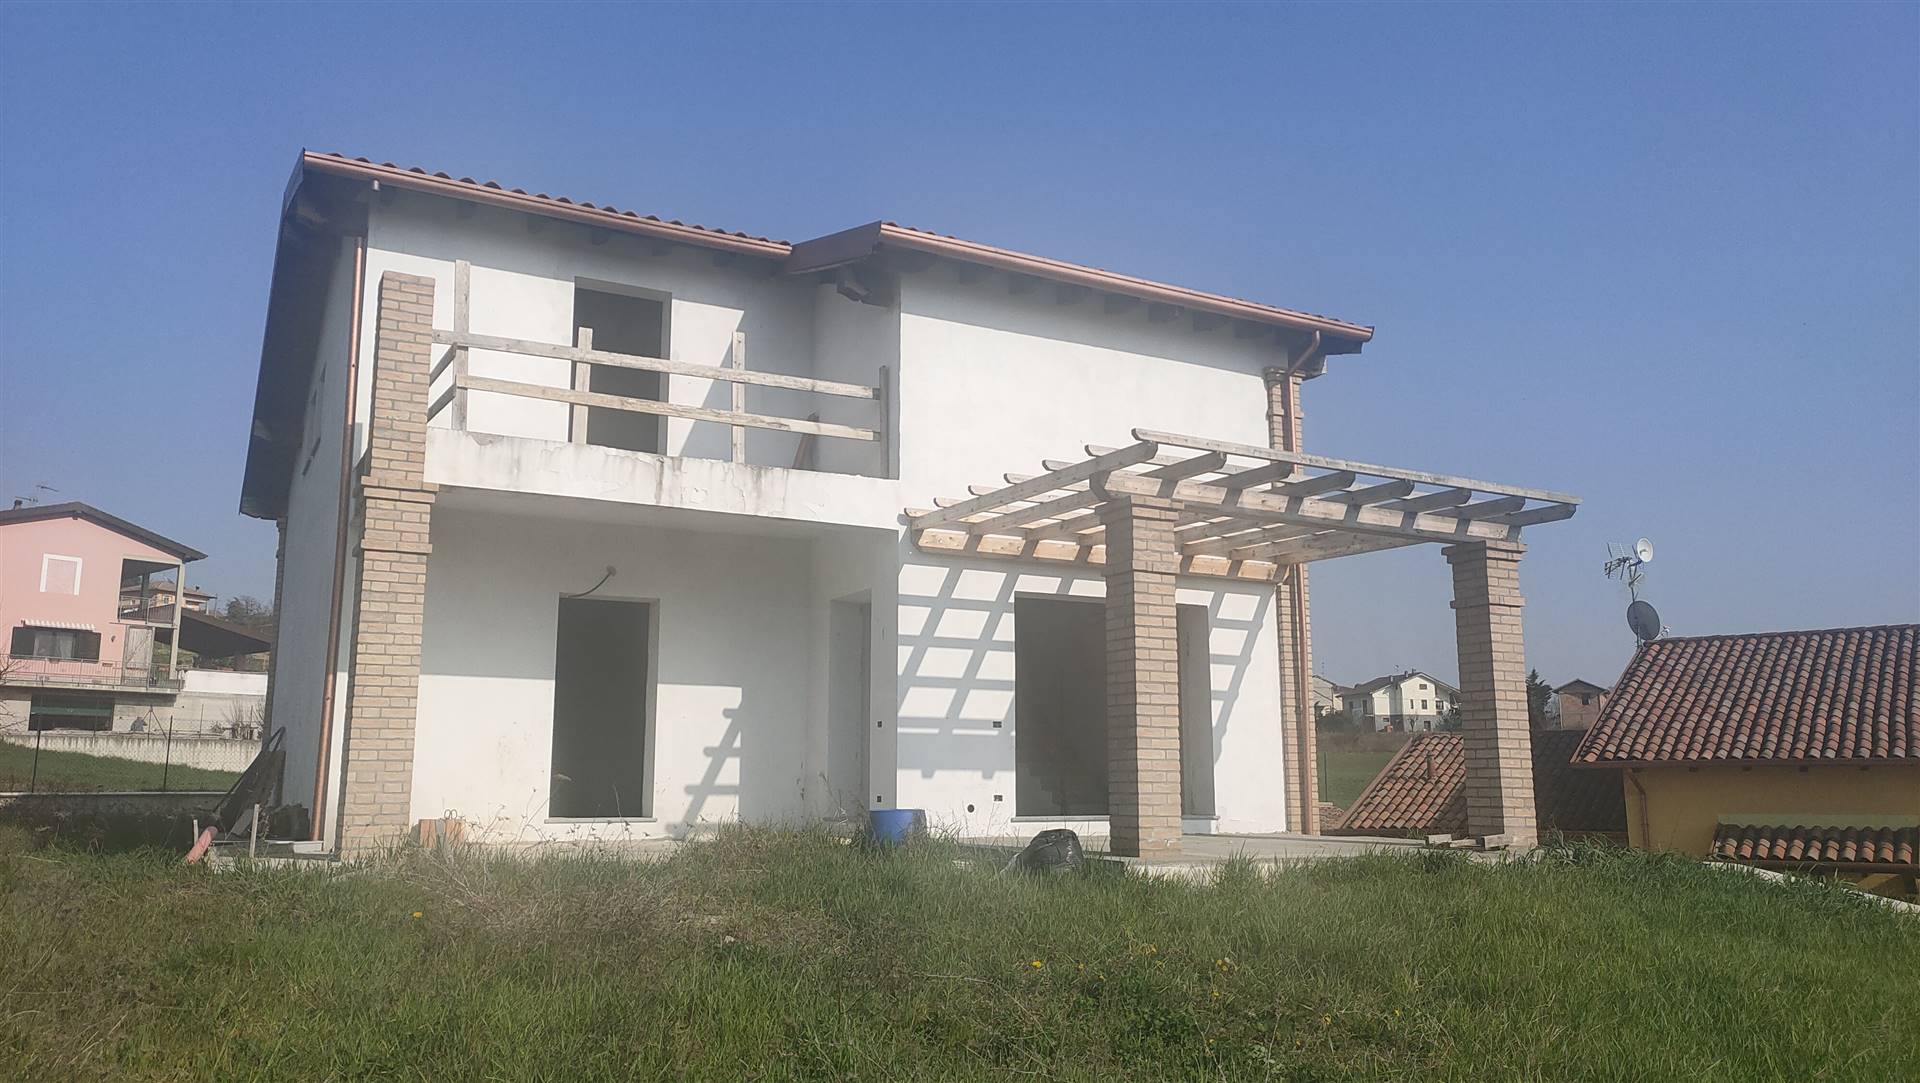 Villa in nuova costruzione in zona Gavazzana a Cassano Spinola